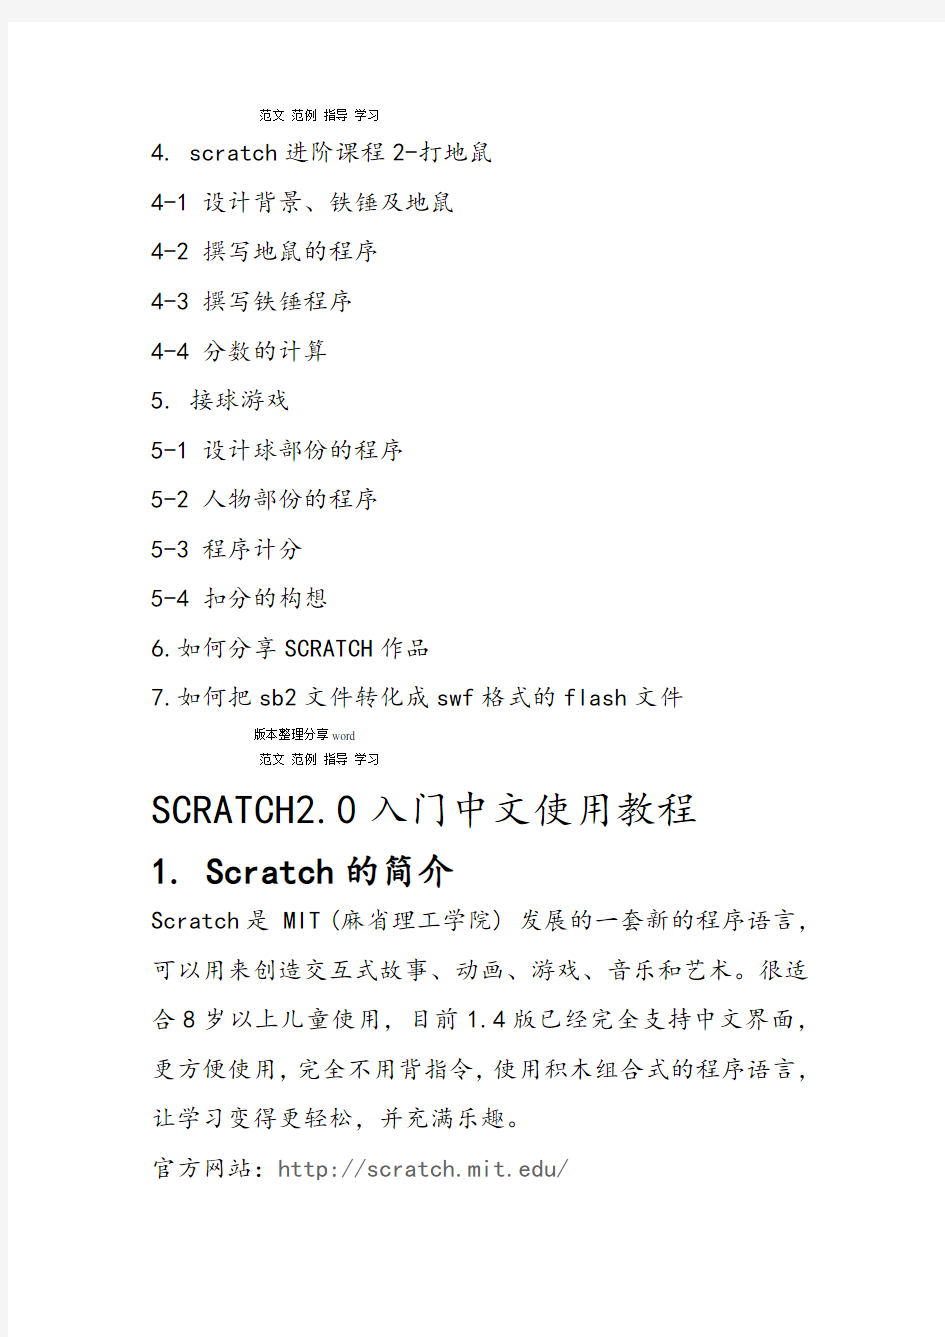 完整版Scratch20入门中文使用教程